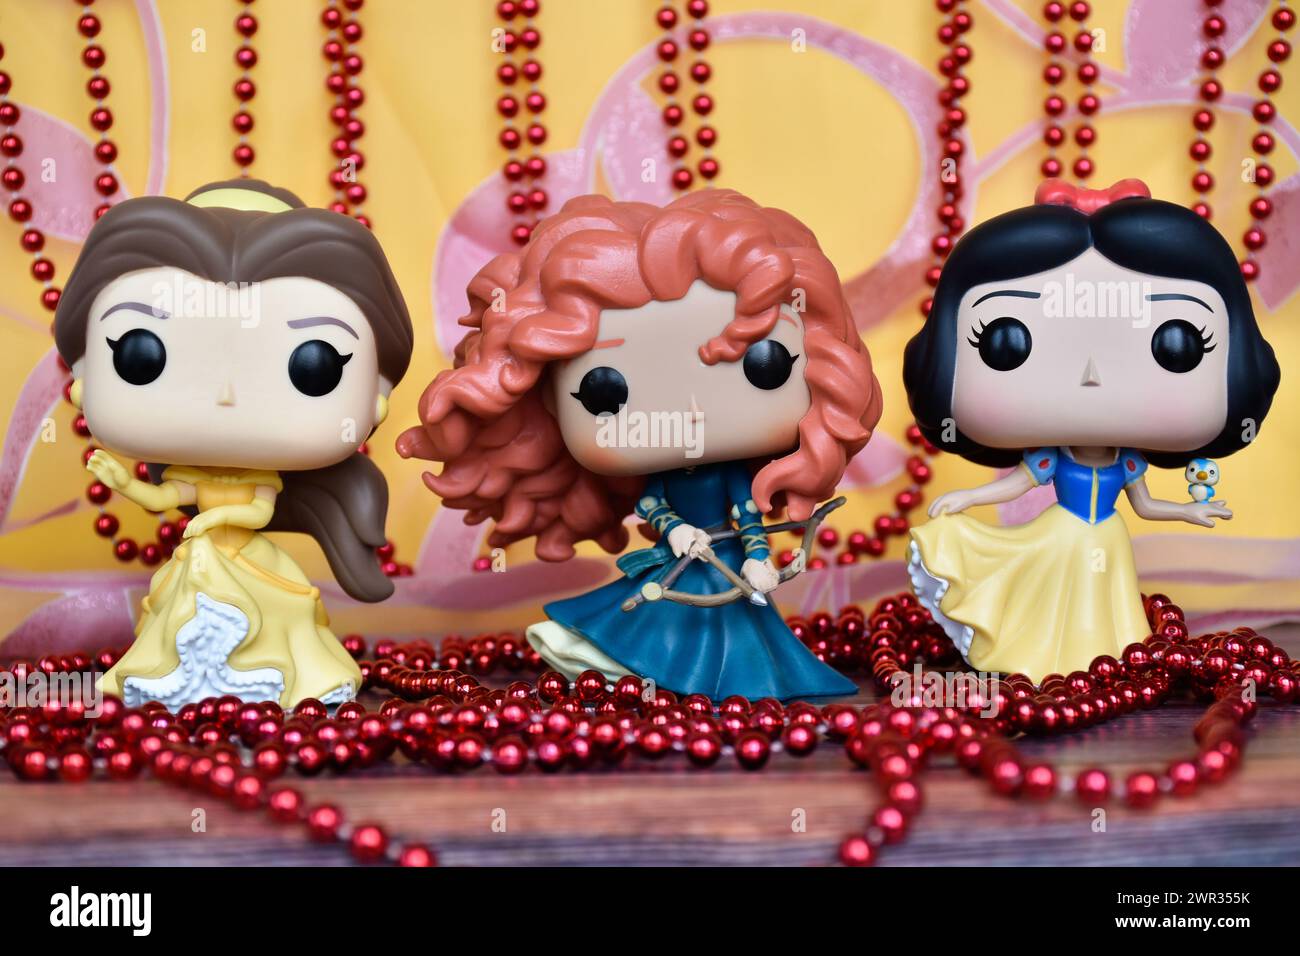 Funko Pop action figure delle principesse Disney Belle (la bella e la bestia), Merida (coraggiosa) e Biancaneve. Tenda rosa oro, collana rossa, favolosa. Foto Stock